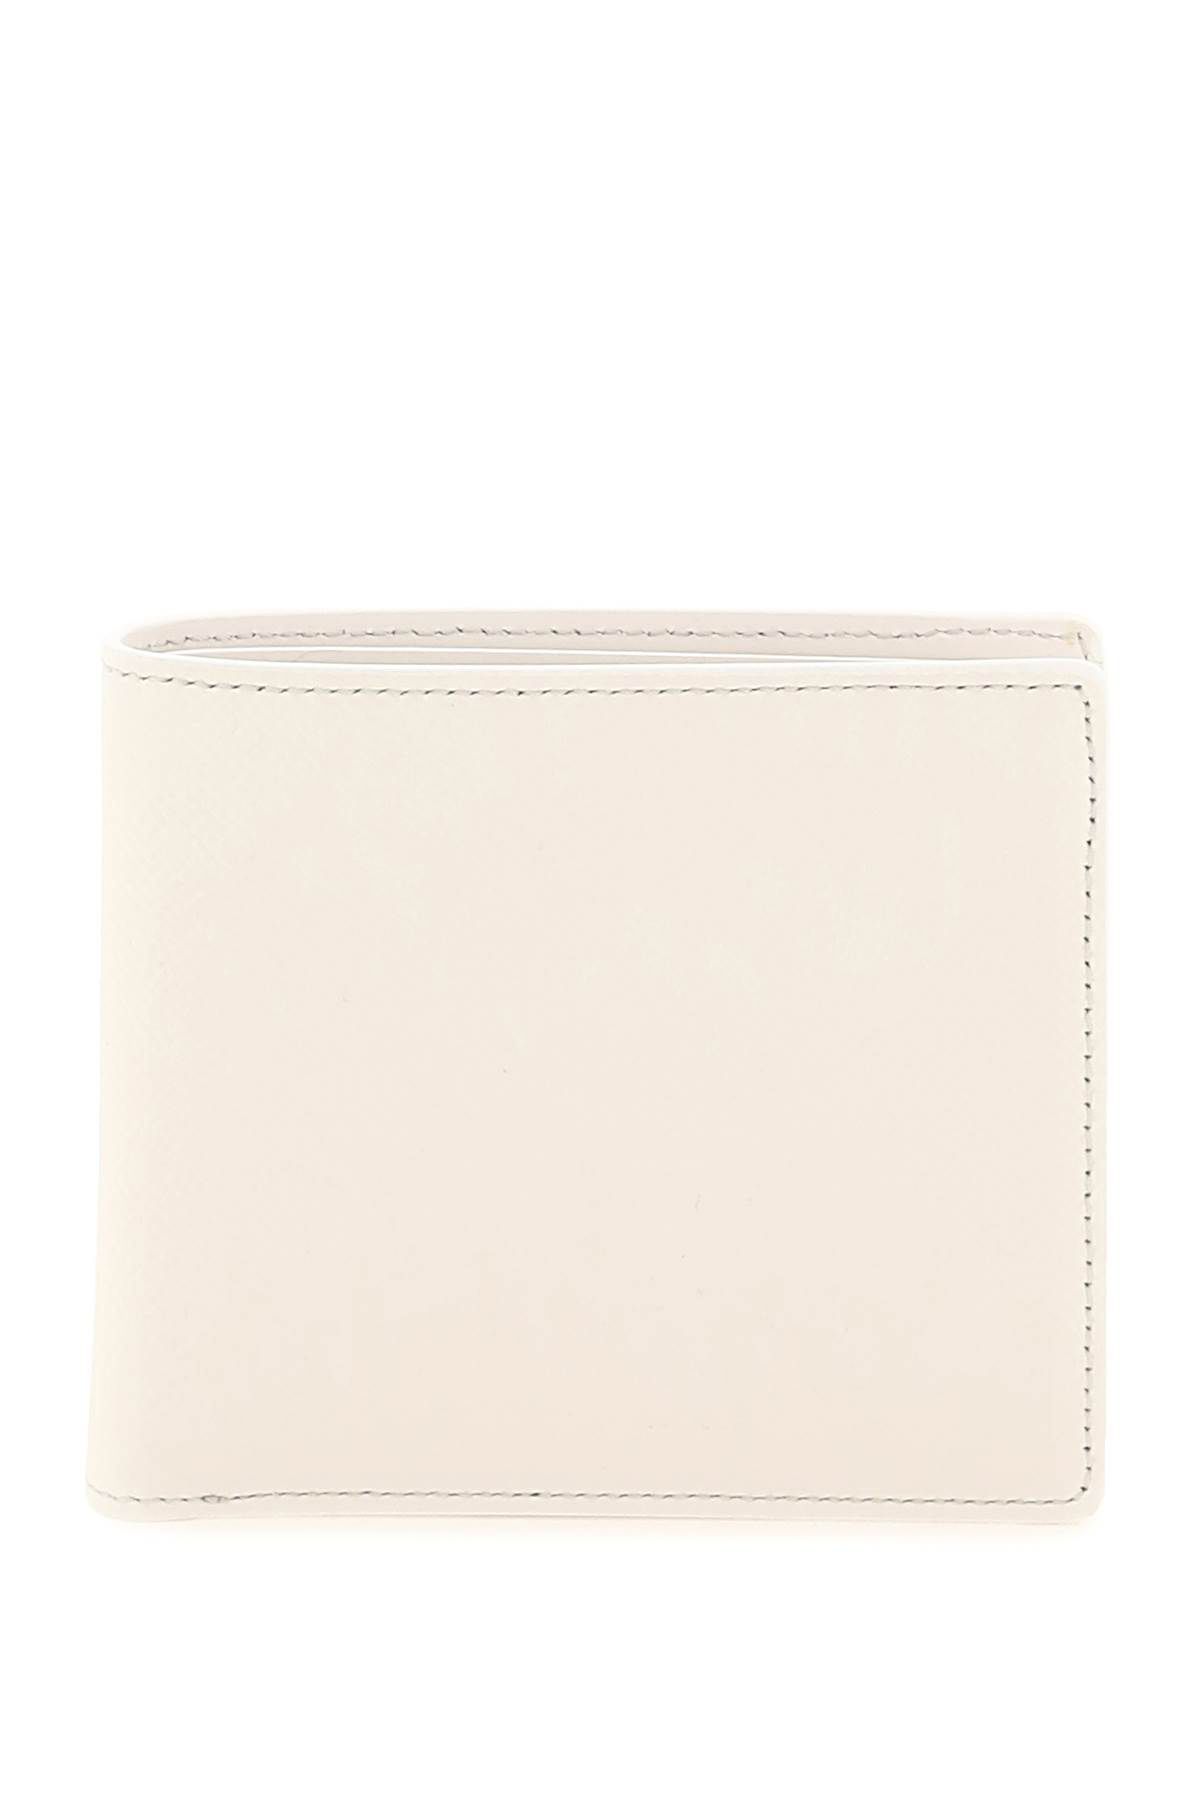 MAISON MARGIELA grained leather bi-fold wallet